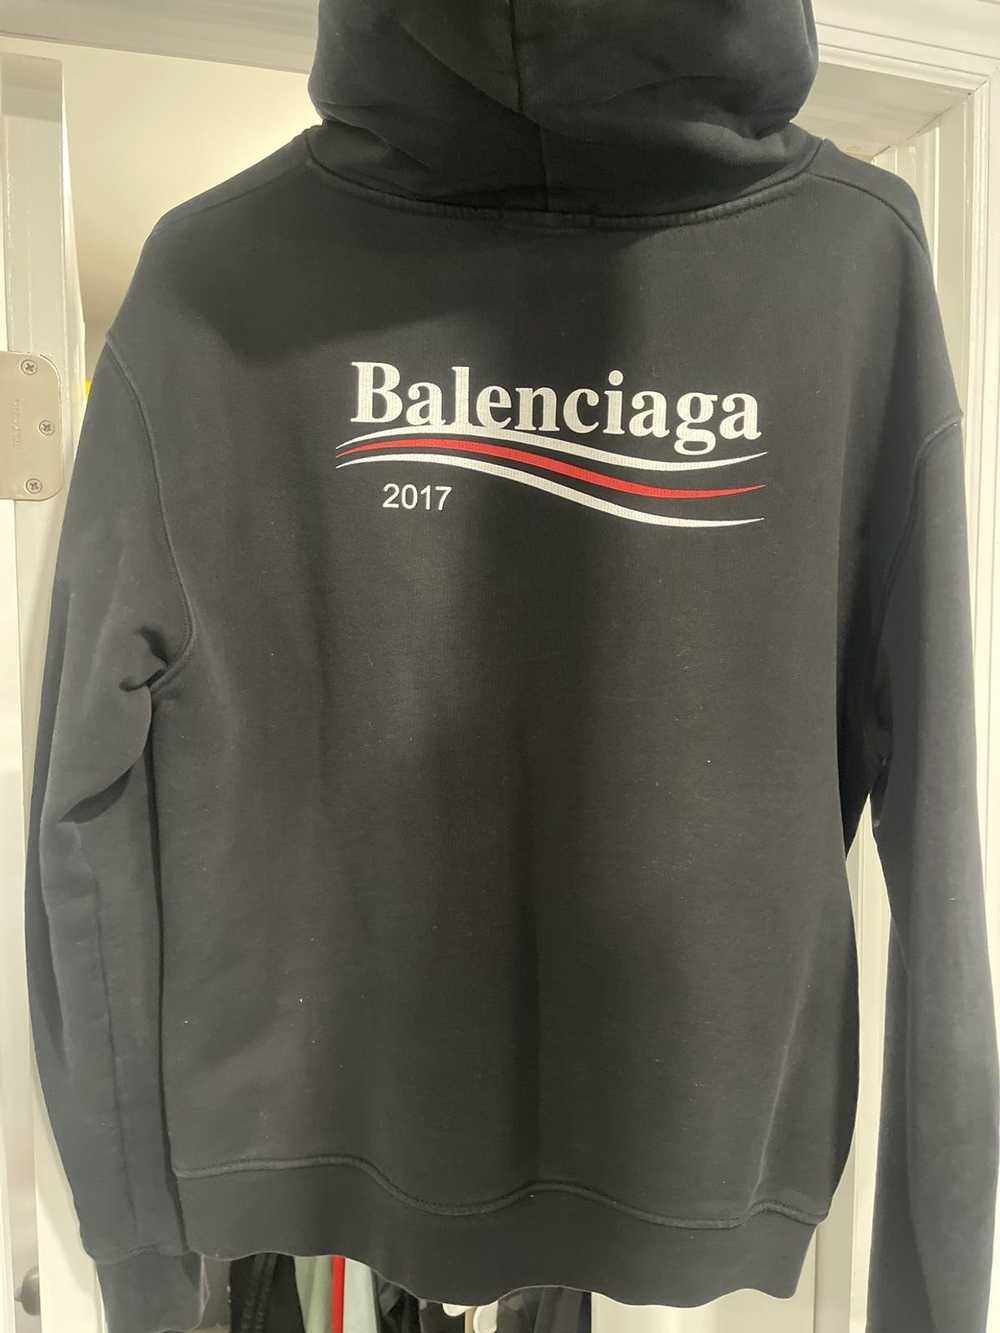 Balenciaga Balenciaga Campaign hoodie 2017 - image 3